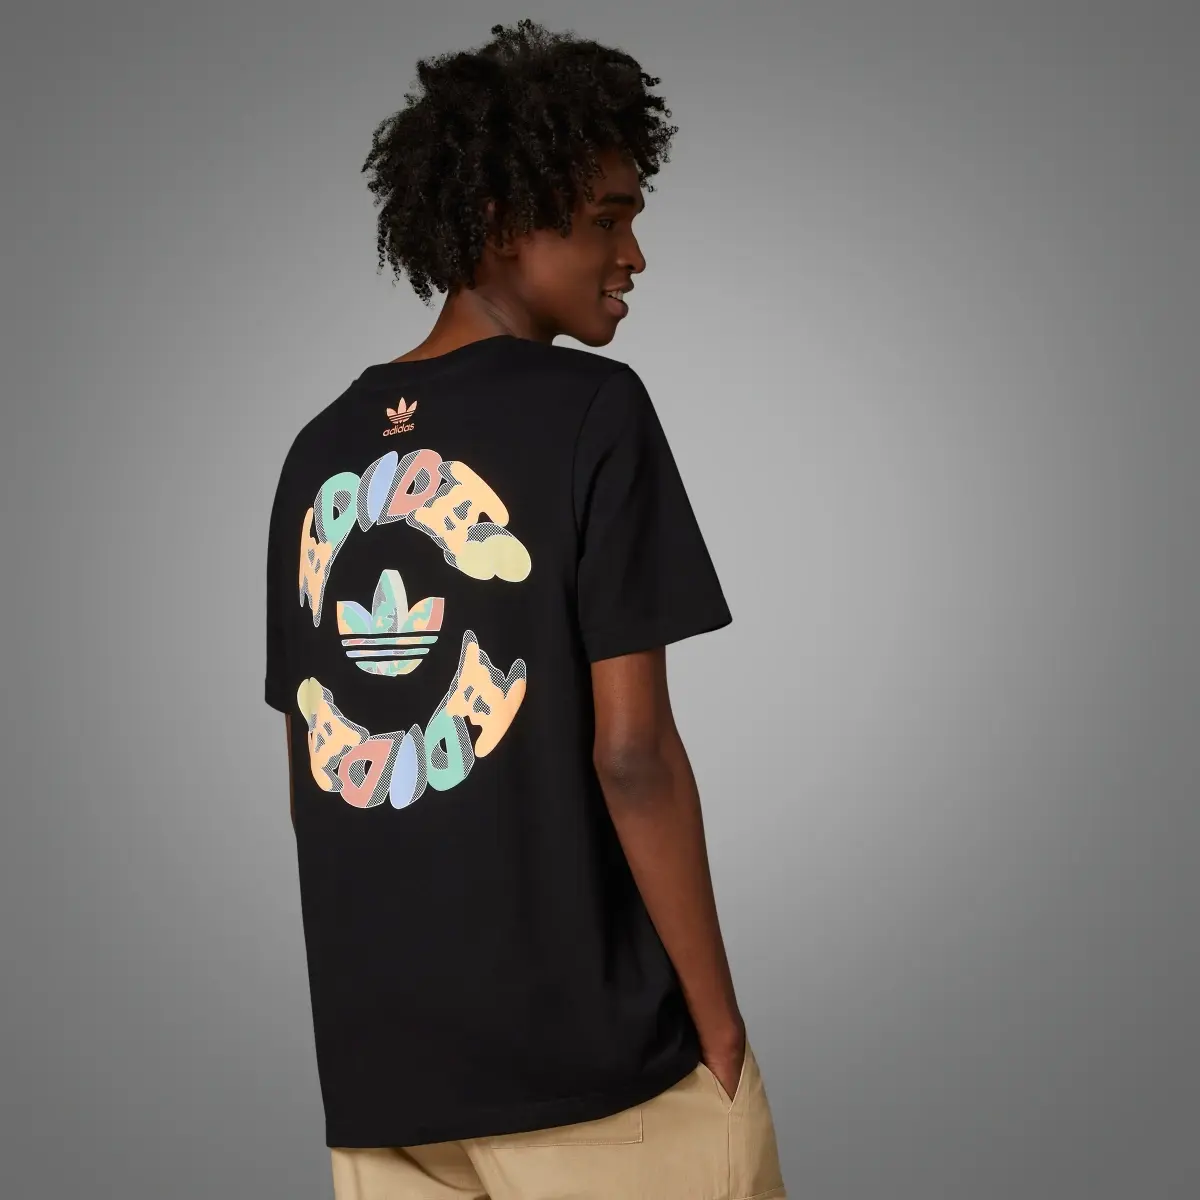 Adidas T-shirt avec graphisme avant/arrière Enjoy Summer. 2